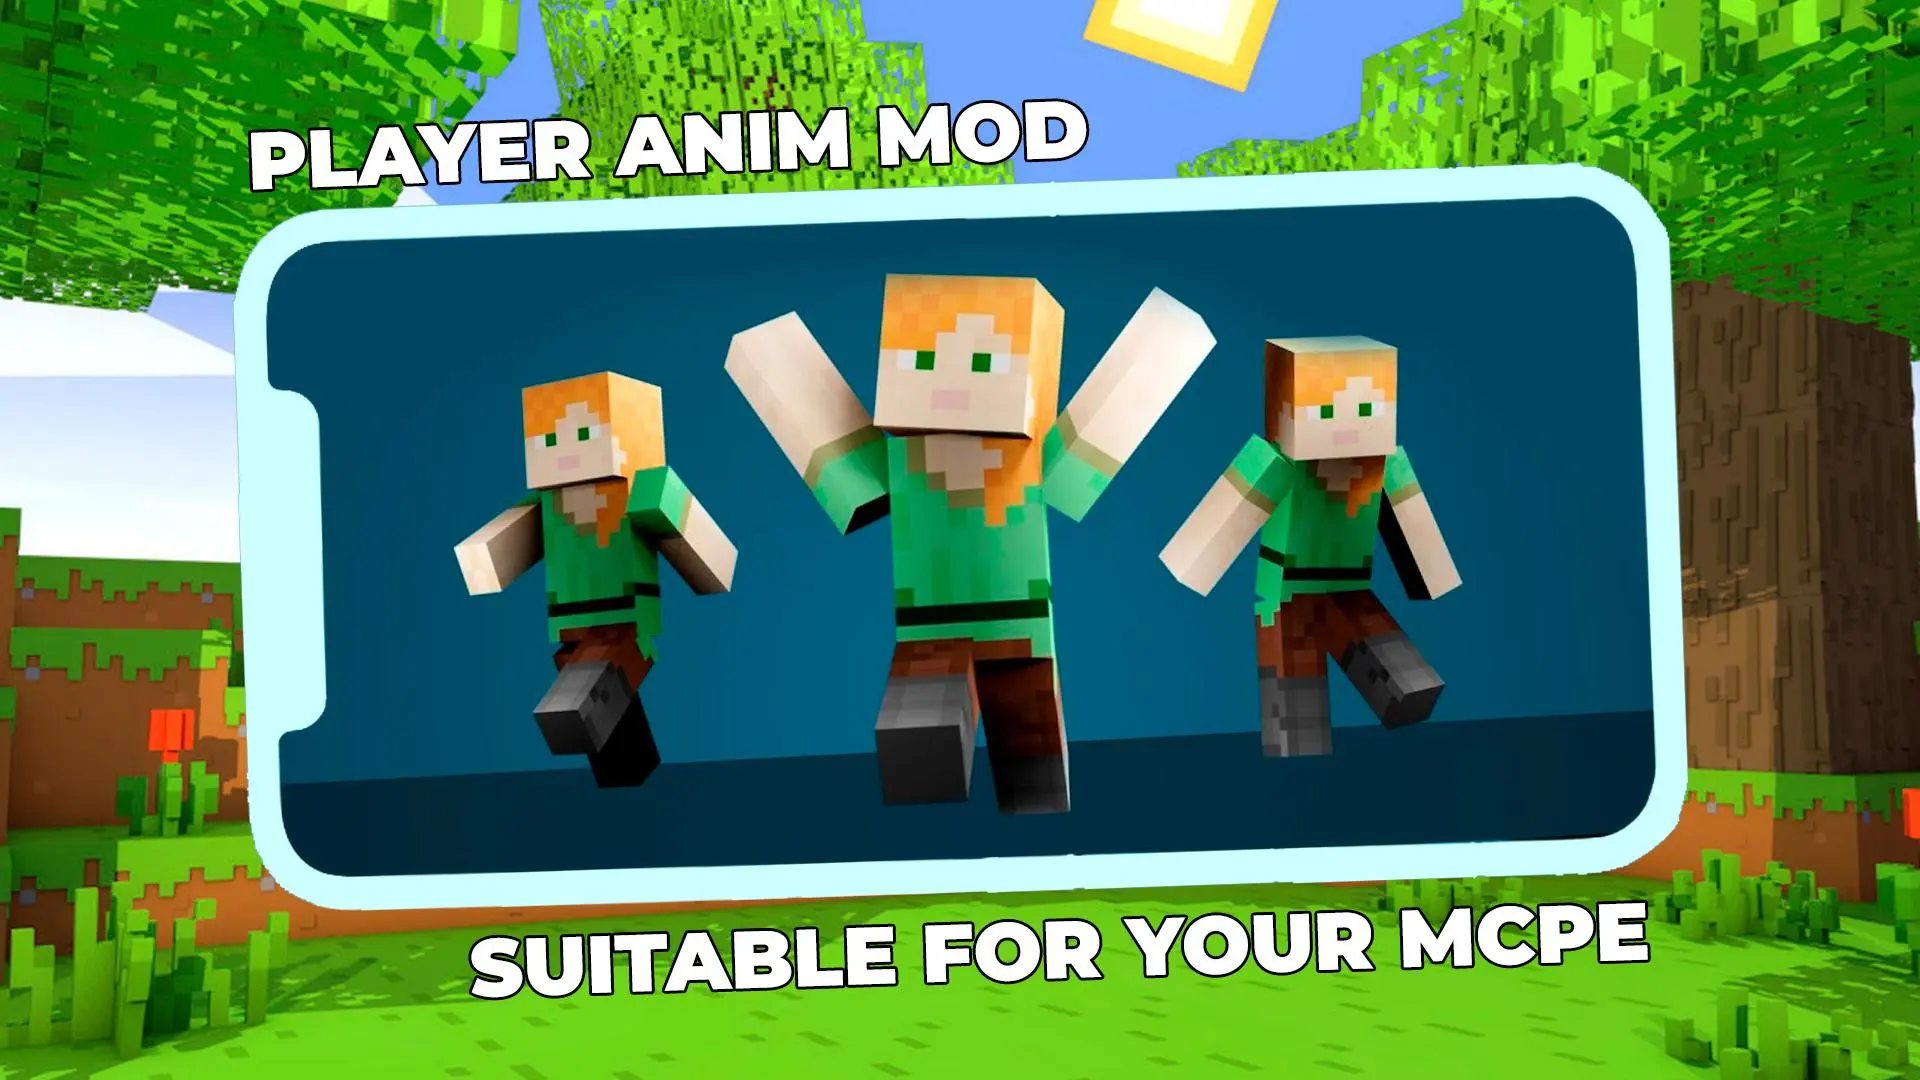 Tải xuống Player Animation Mod Minecraft trên PC | GameLoop chính thức